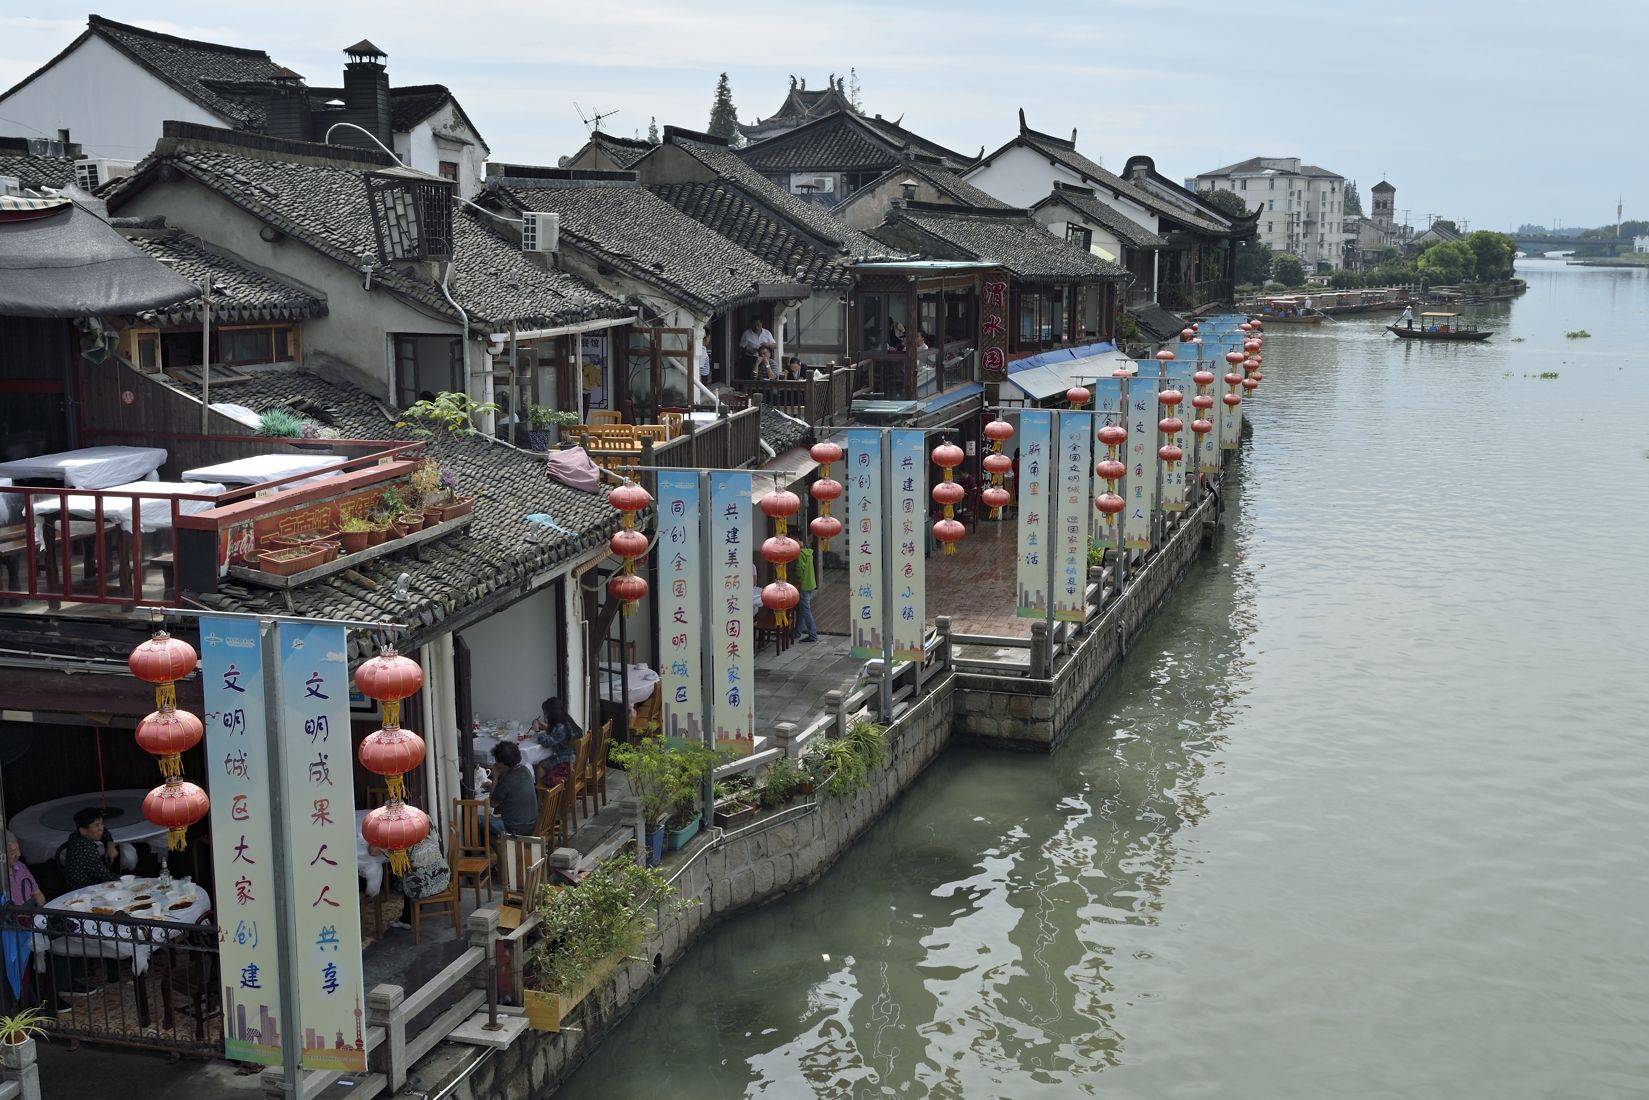 Visita a Zhujiajiao, piccolo villaggio sull'acqua